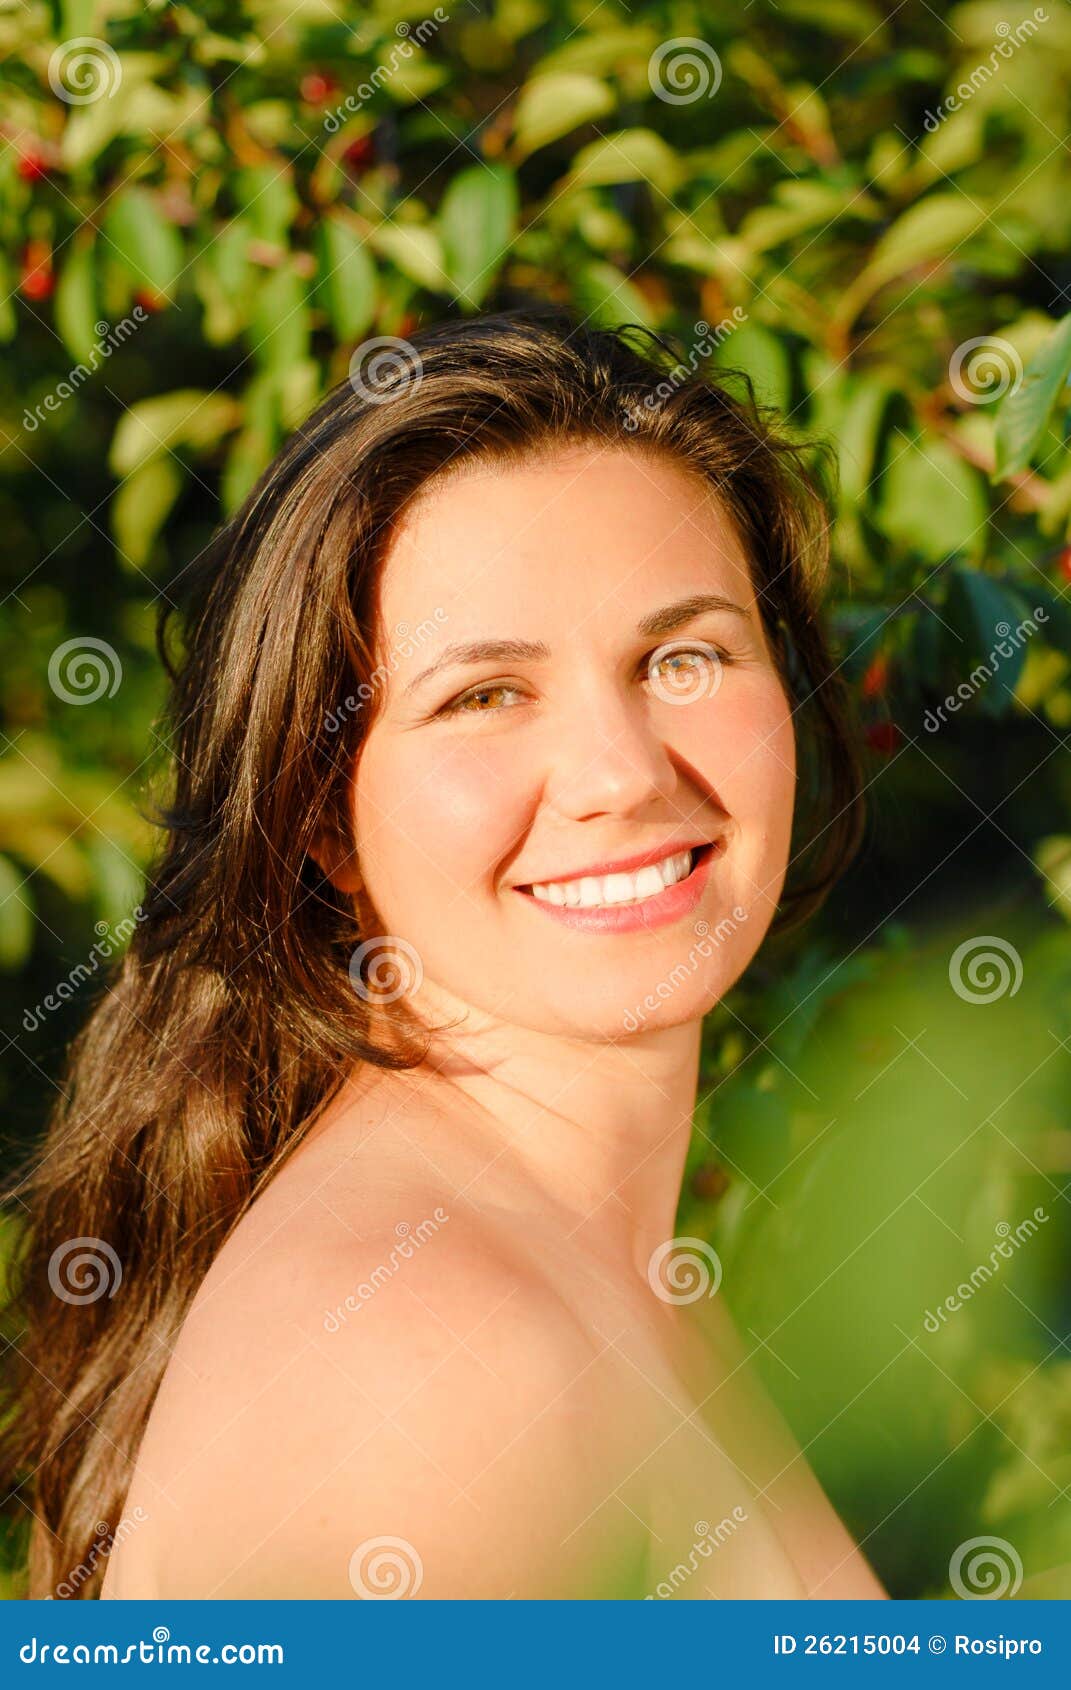 绿色叶子的新美丽的妇女 库存照片 图片 包括有 照亮 白种人 成人 概念 有吸引力的 耳朵 保险开关